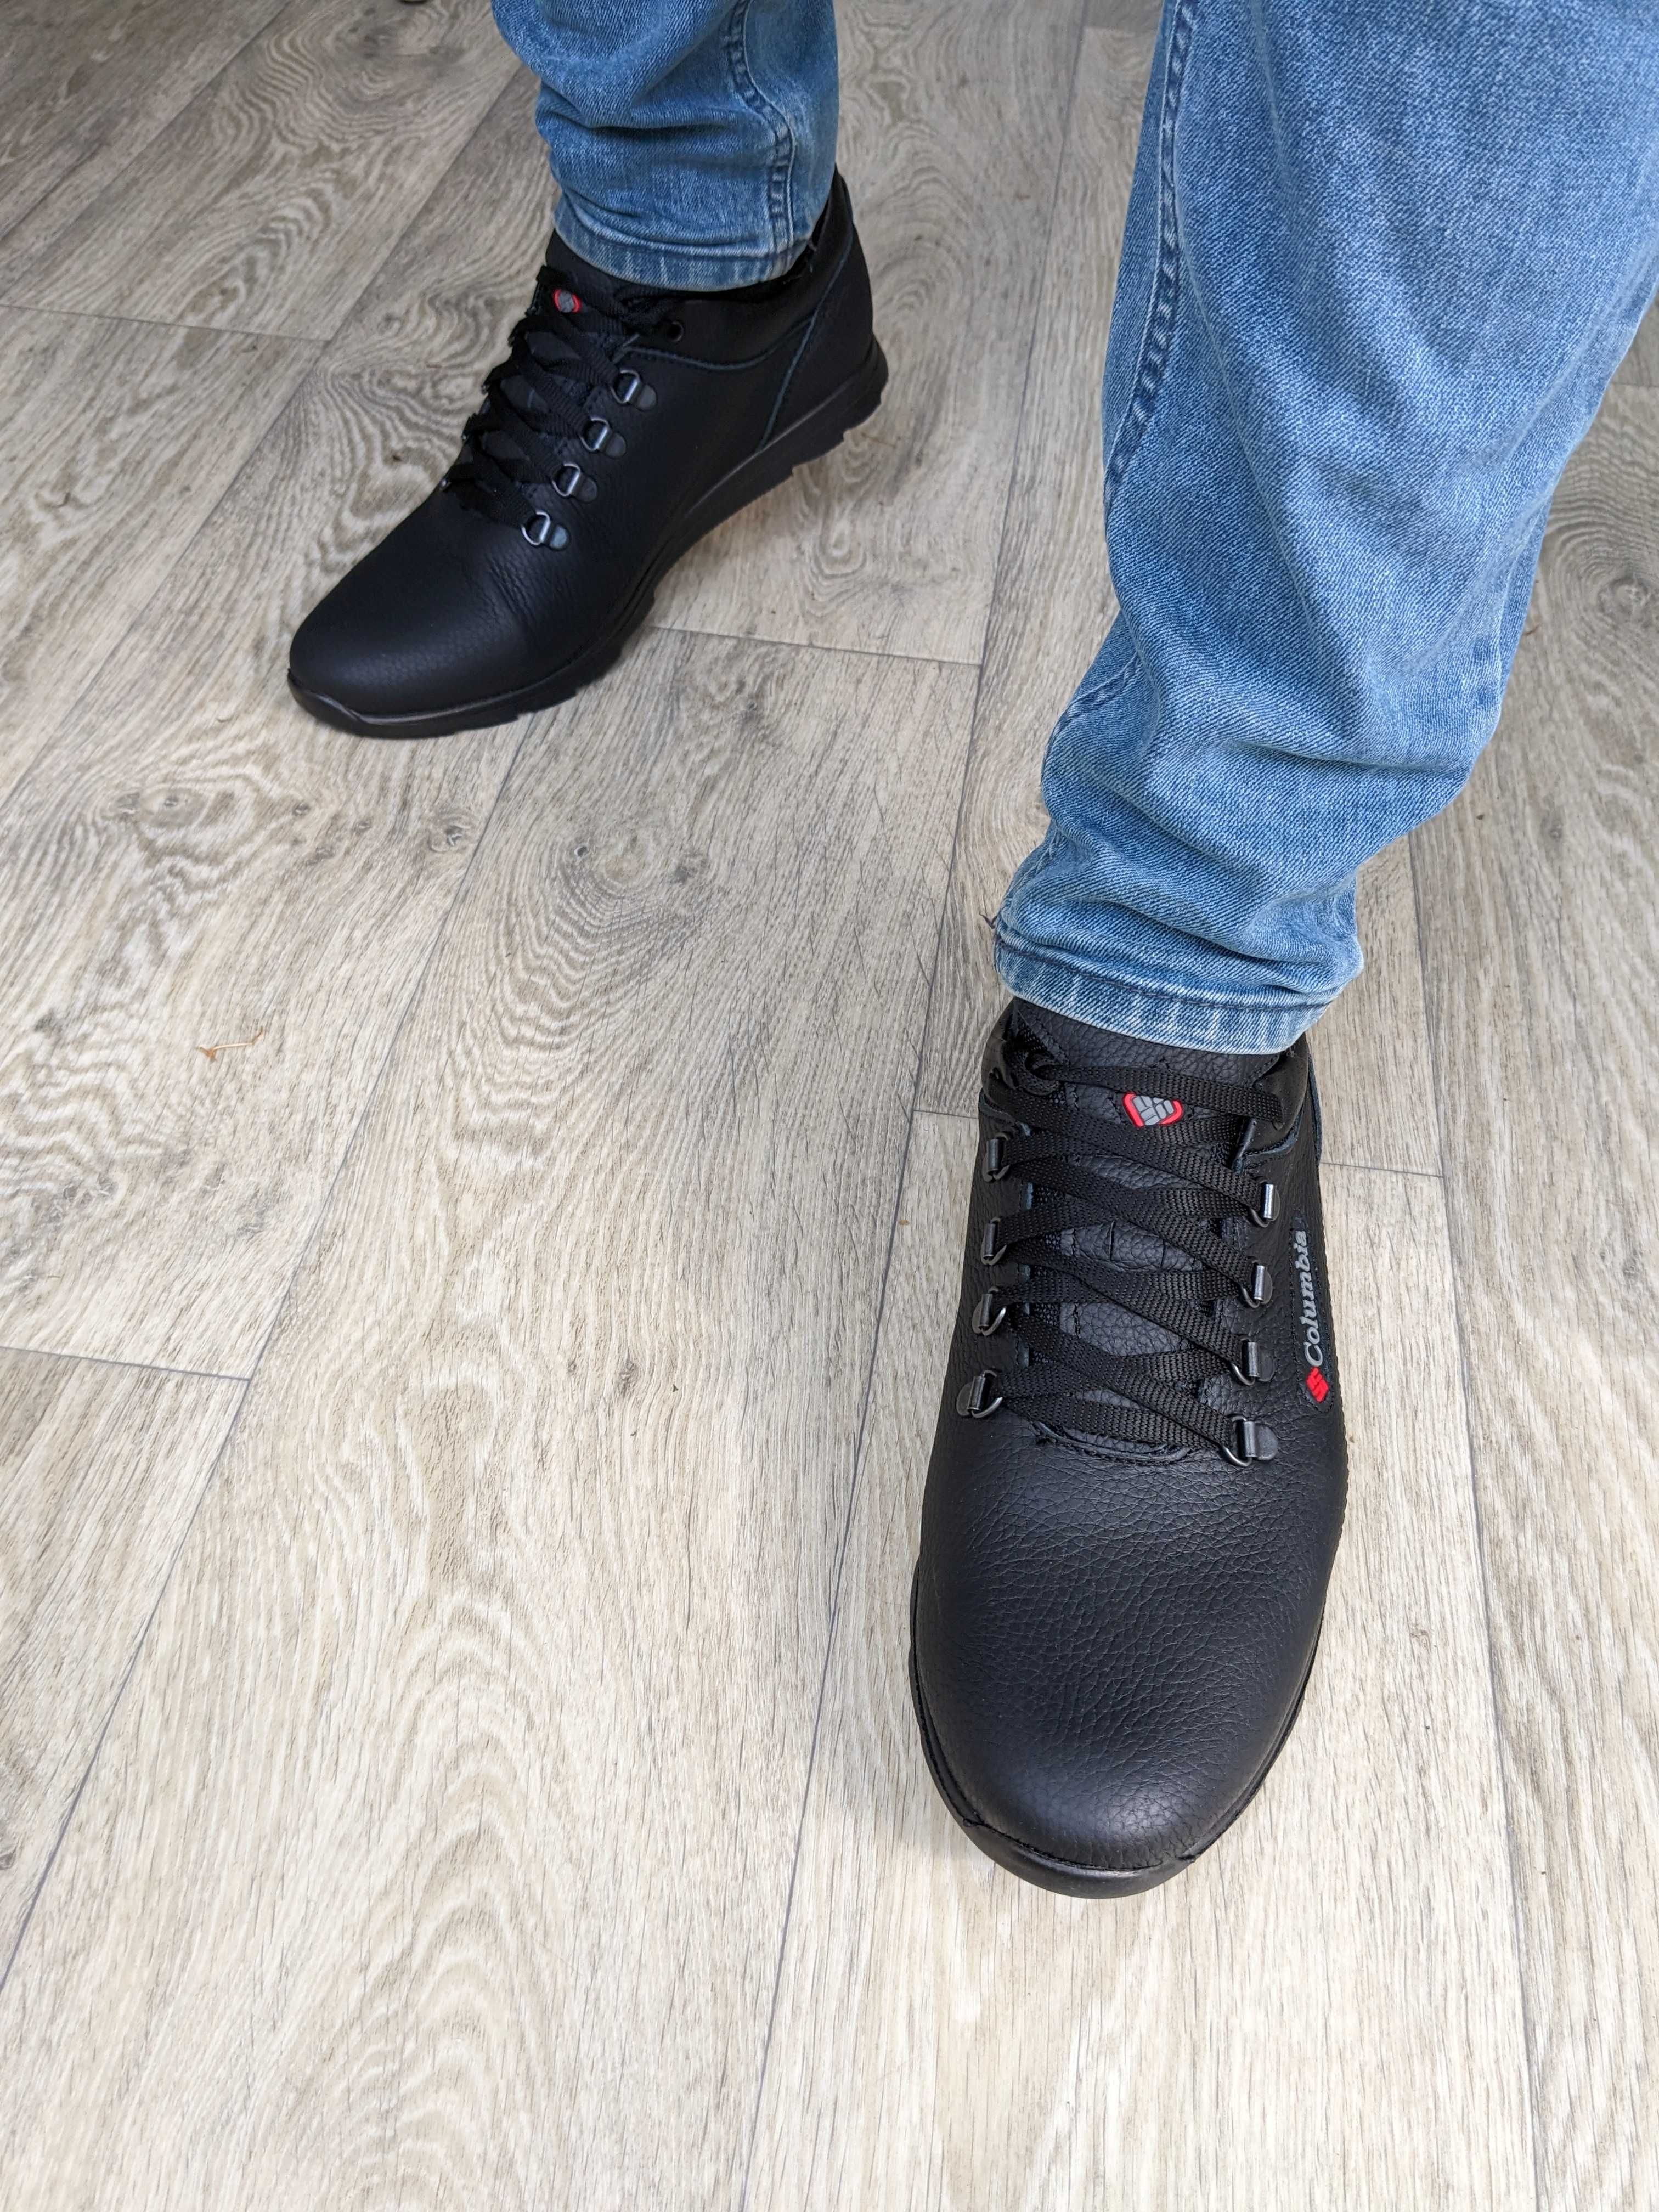 Мужские кожаные кроссовки туфли чоловічі шкіряні кросівки взуття